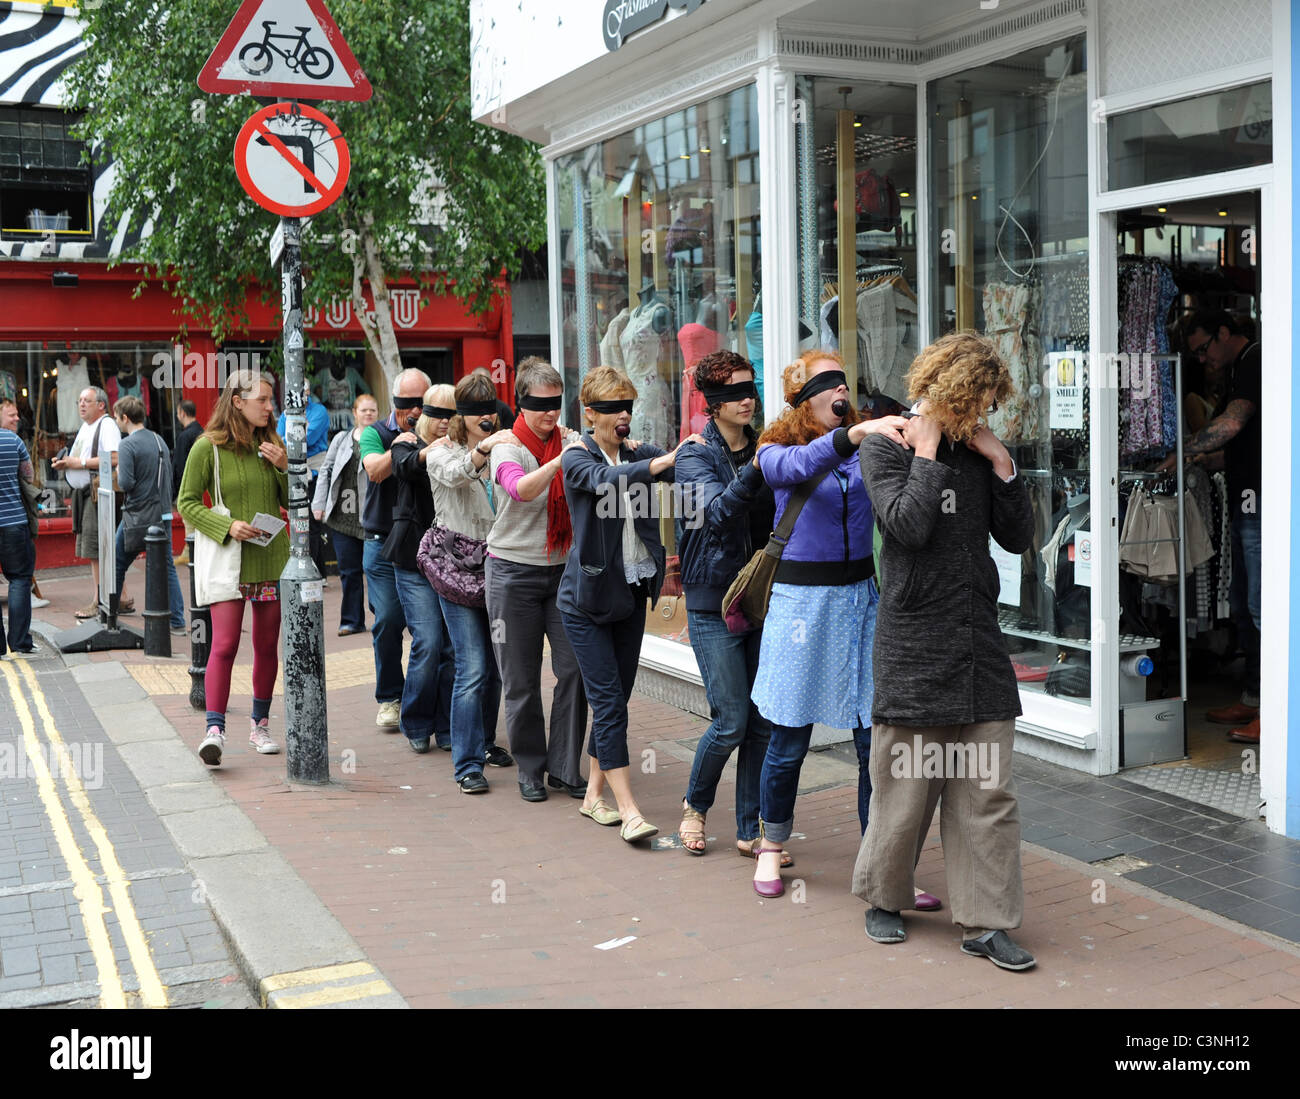 Événement farfelu au Brighton Festival 2011 où les membres du public sont menées autour de la ville blinfold sur un sentier Banque D'Images